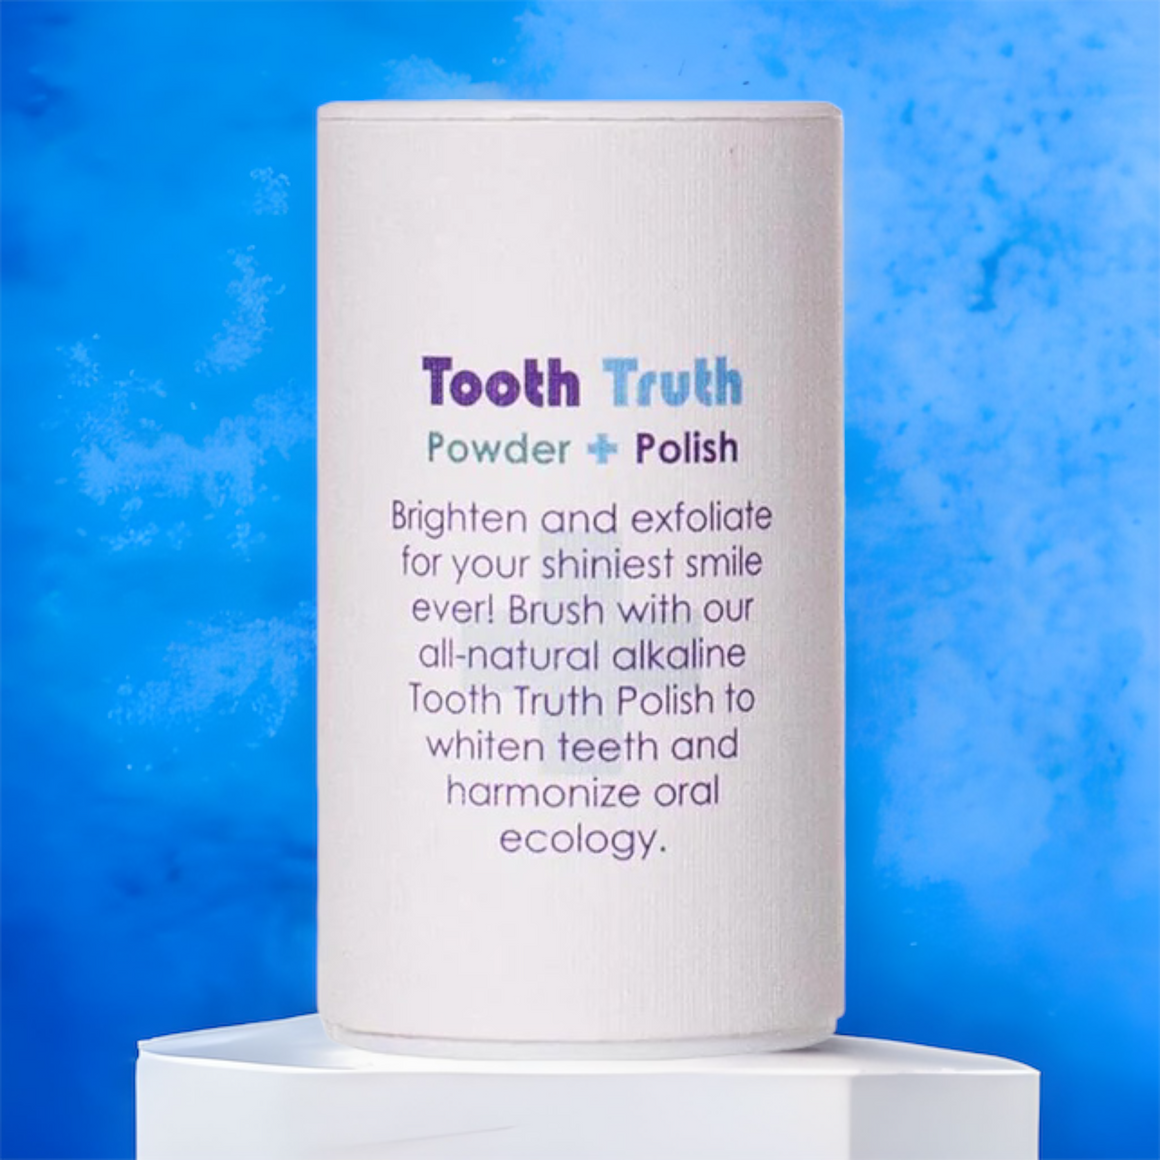 Tooth Truth Powder Polish